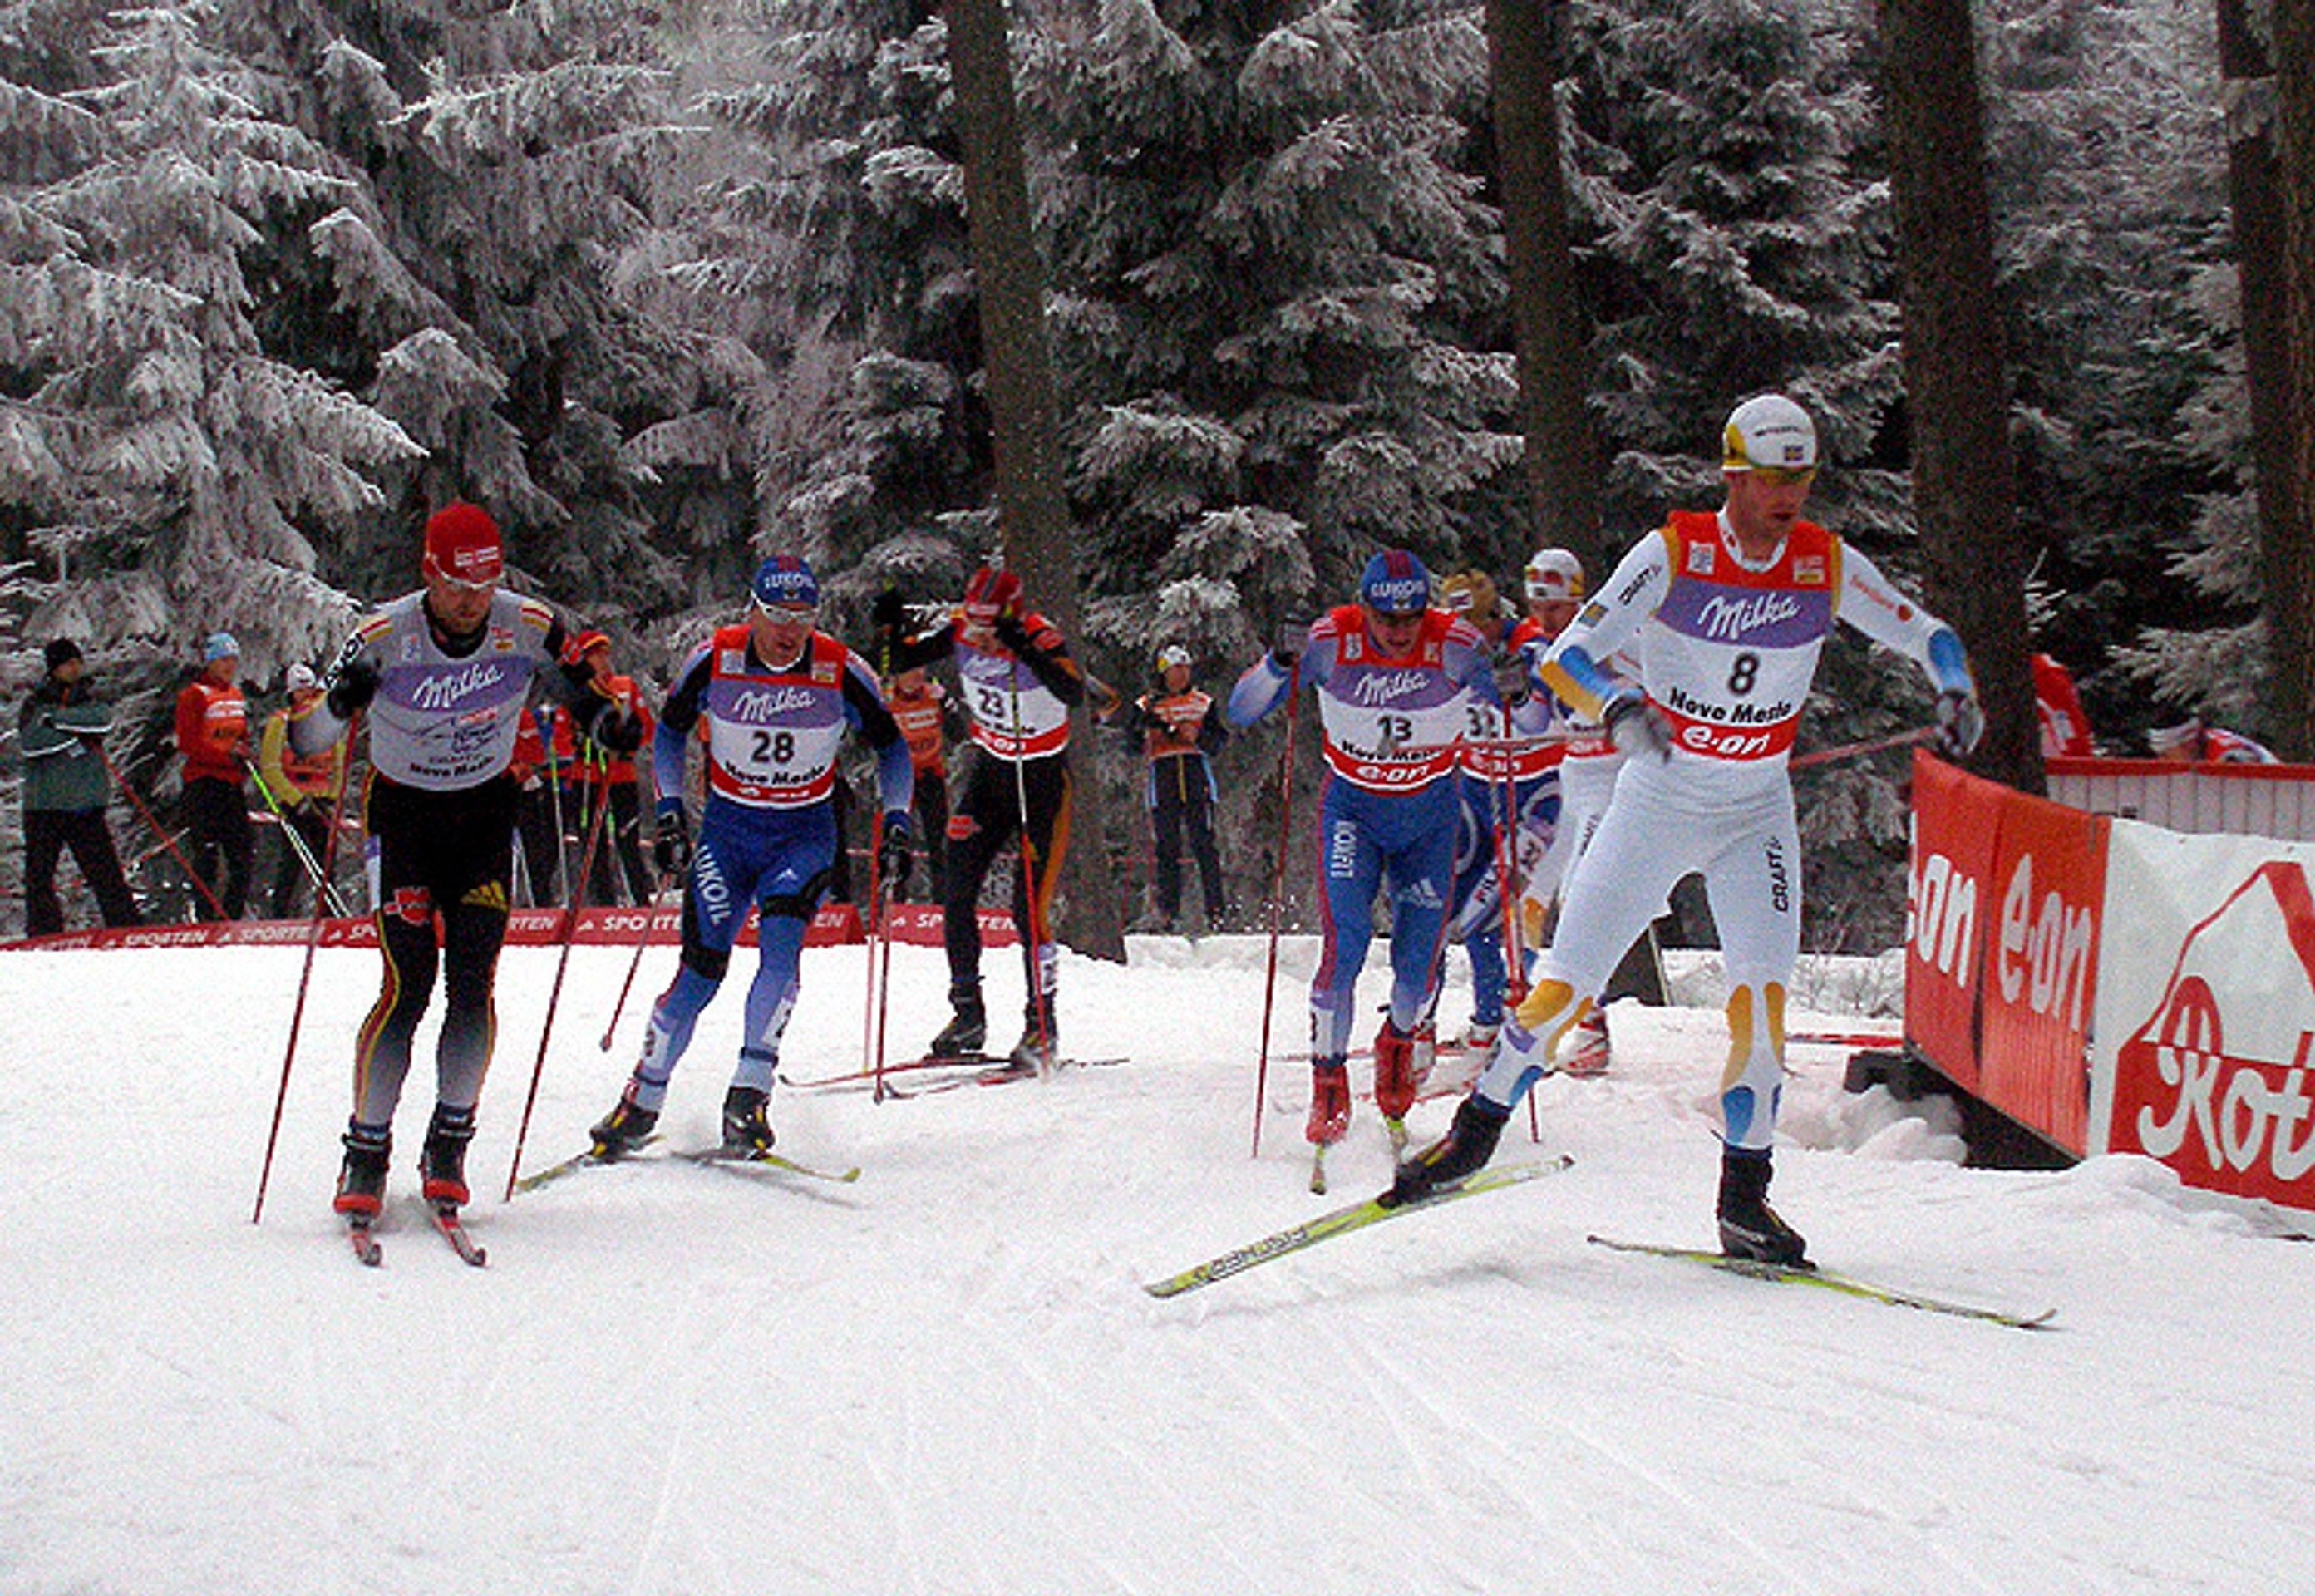 Tour de Ski v Novém Městě na Moravě - Bauer zvítězil v Novém Městě i dnes a vede Tour de Ski (10/12)